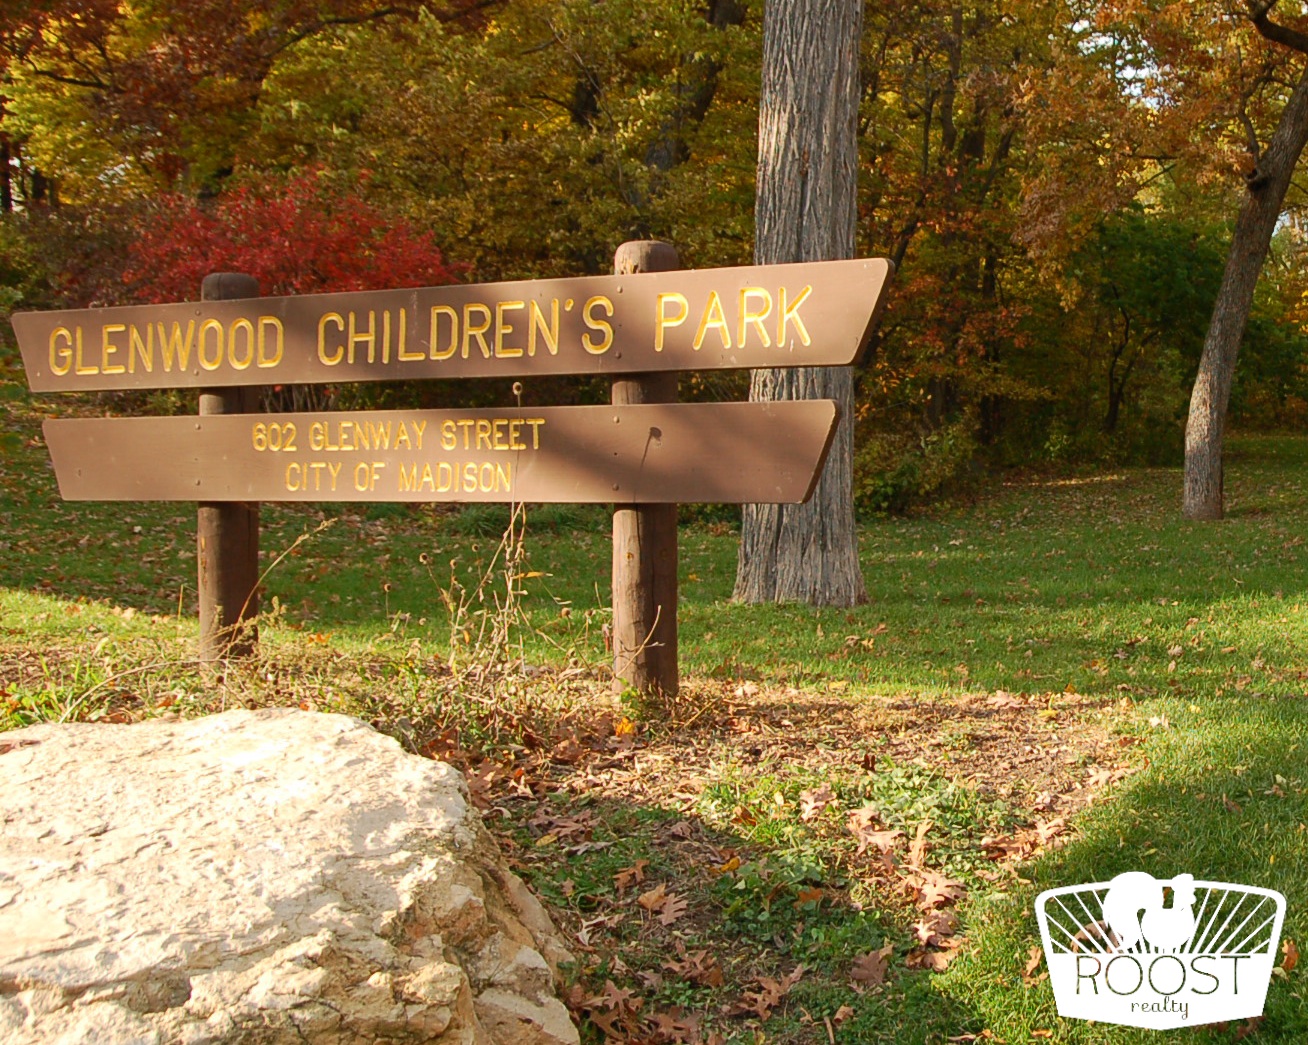 Glenwood Children's Park sign in the Dudgeon Monroe neighborhood.